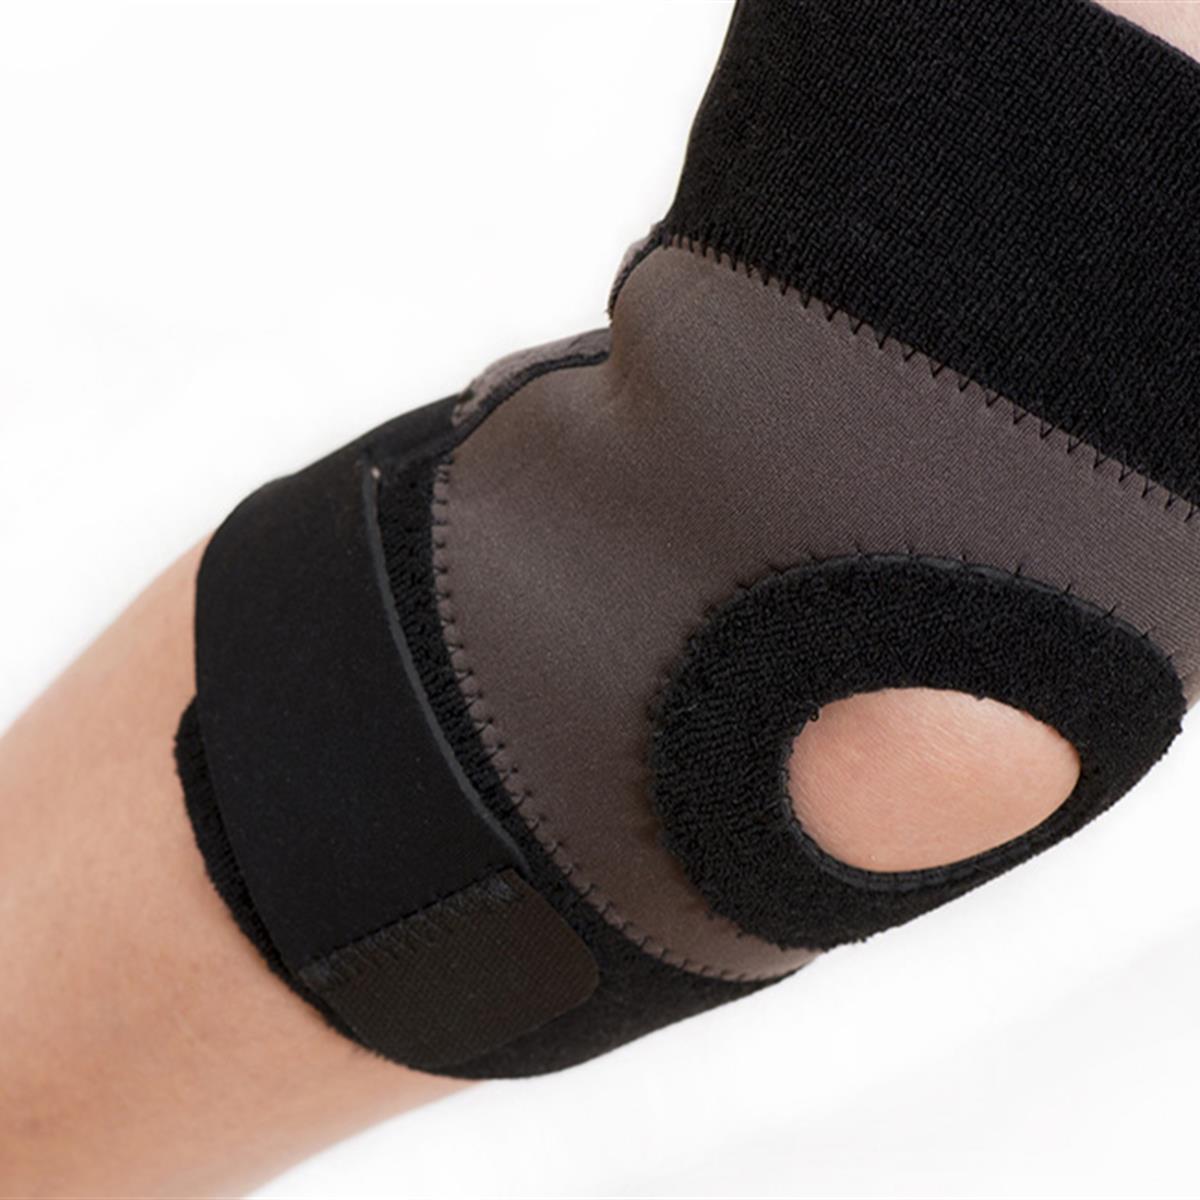  Rodillera articulada para hombres y mujeres, soporte de rodilla  para inflamación del ligamento cruzado anterior o lesiones del tendón,  ligamento y menisco., S : Salud y Hogar